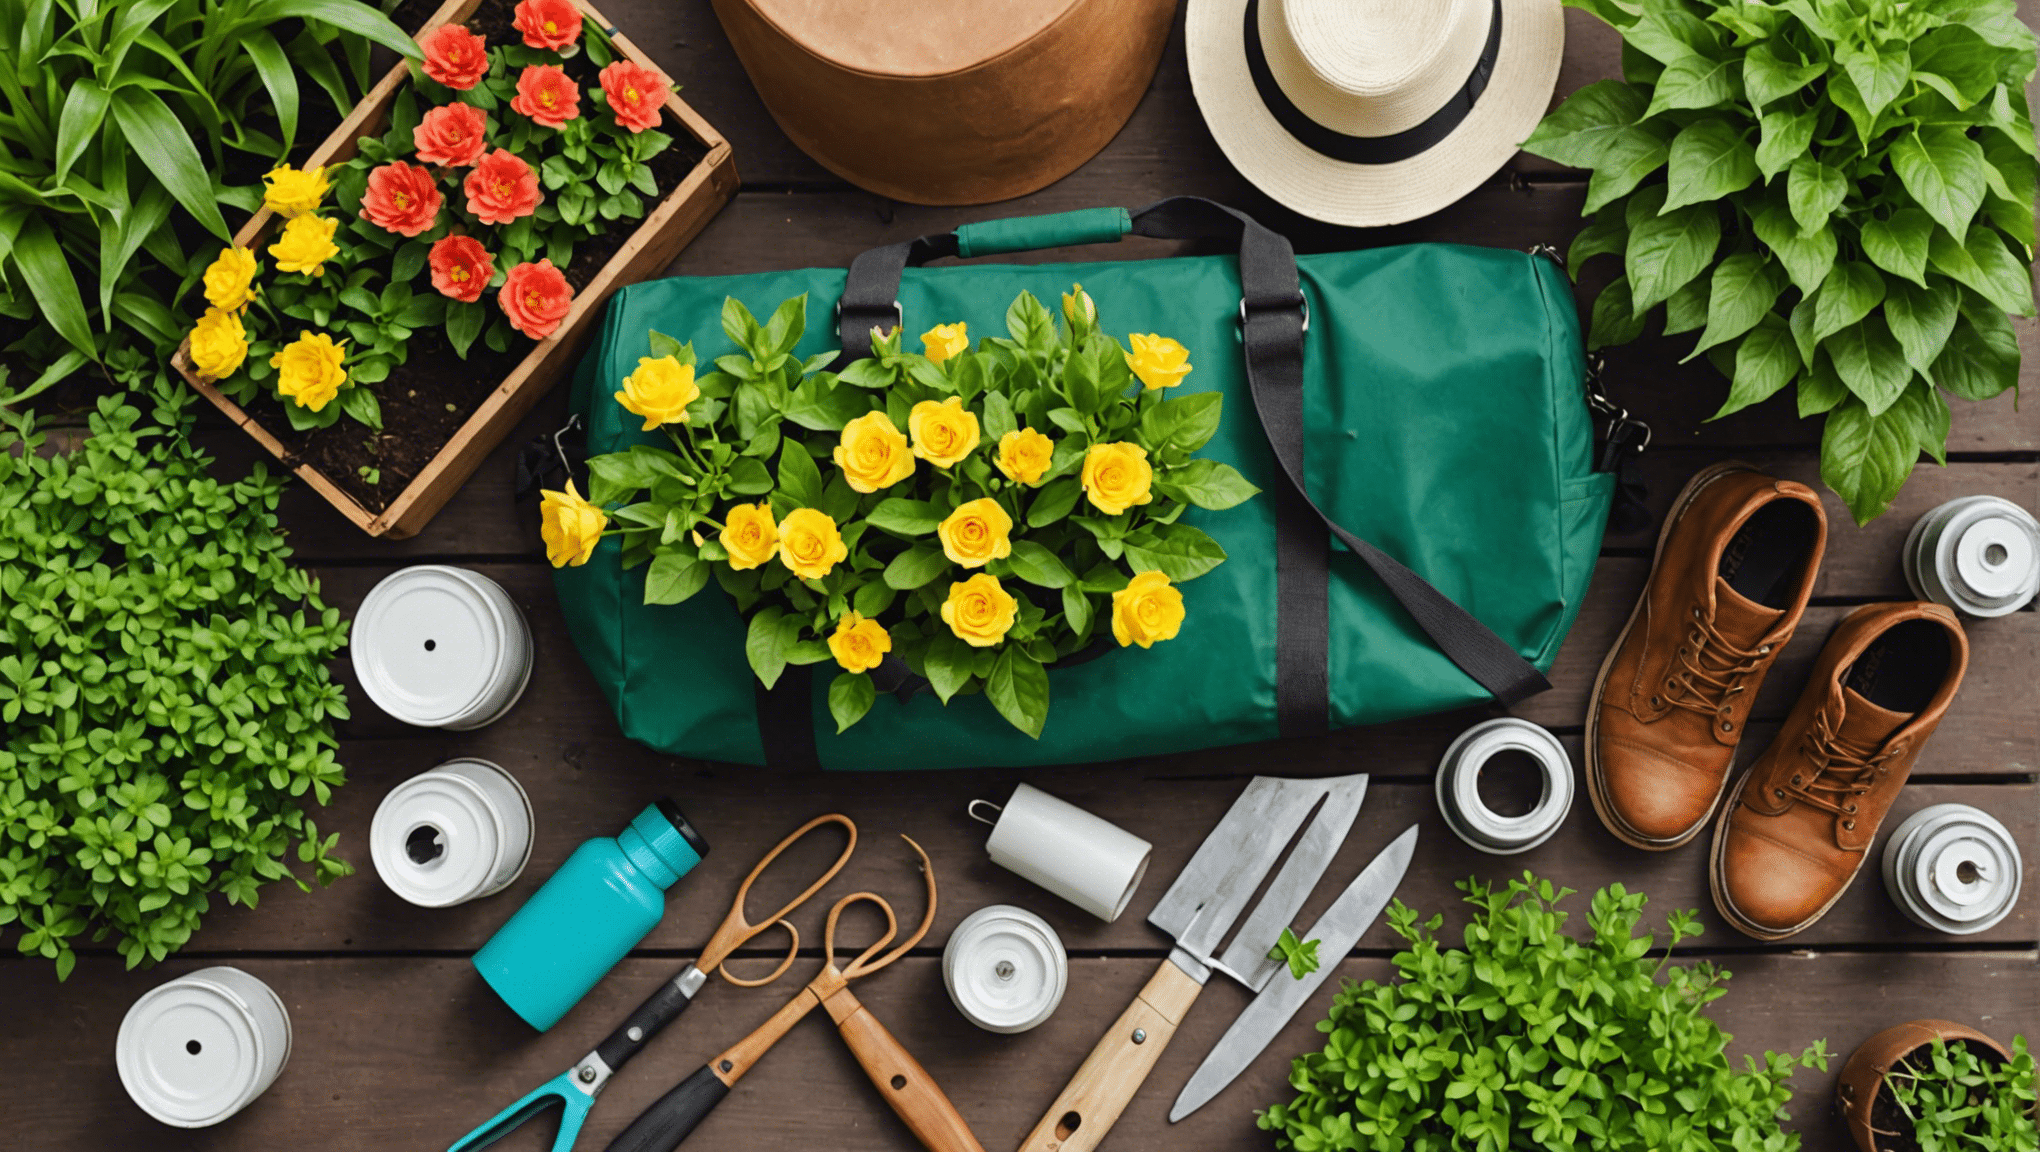 Descubra los artículos imprescindibles que debe incluir en su bolsa de jardinería para disfrutar de una experiencia de jardinería sin complicaciones.